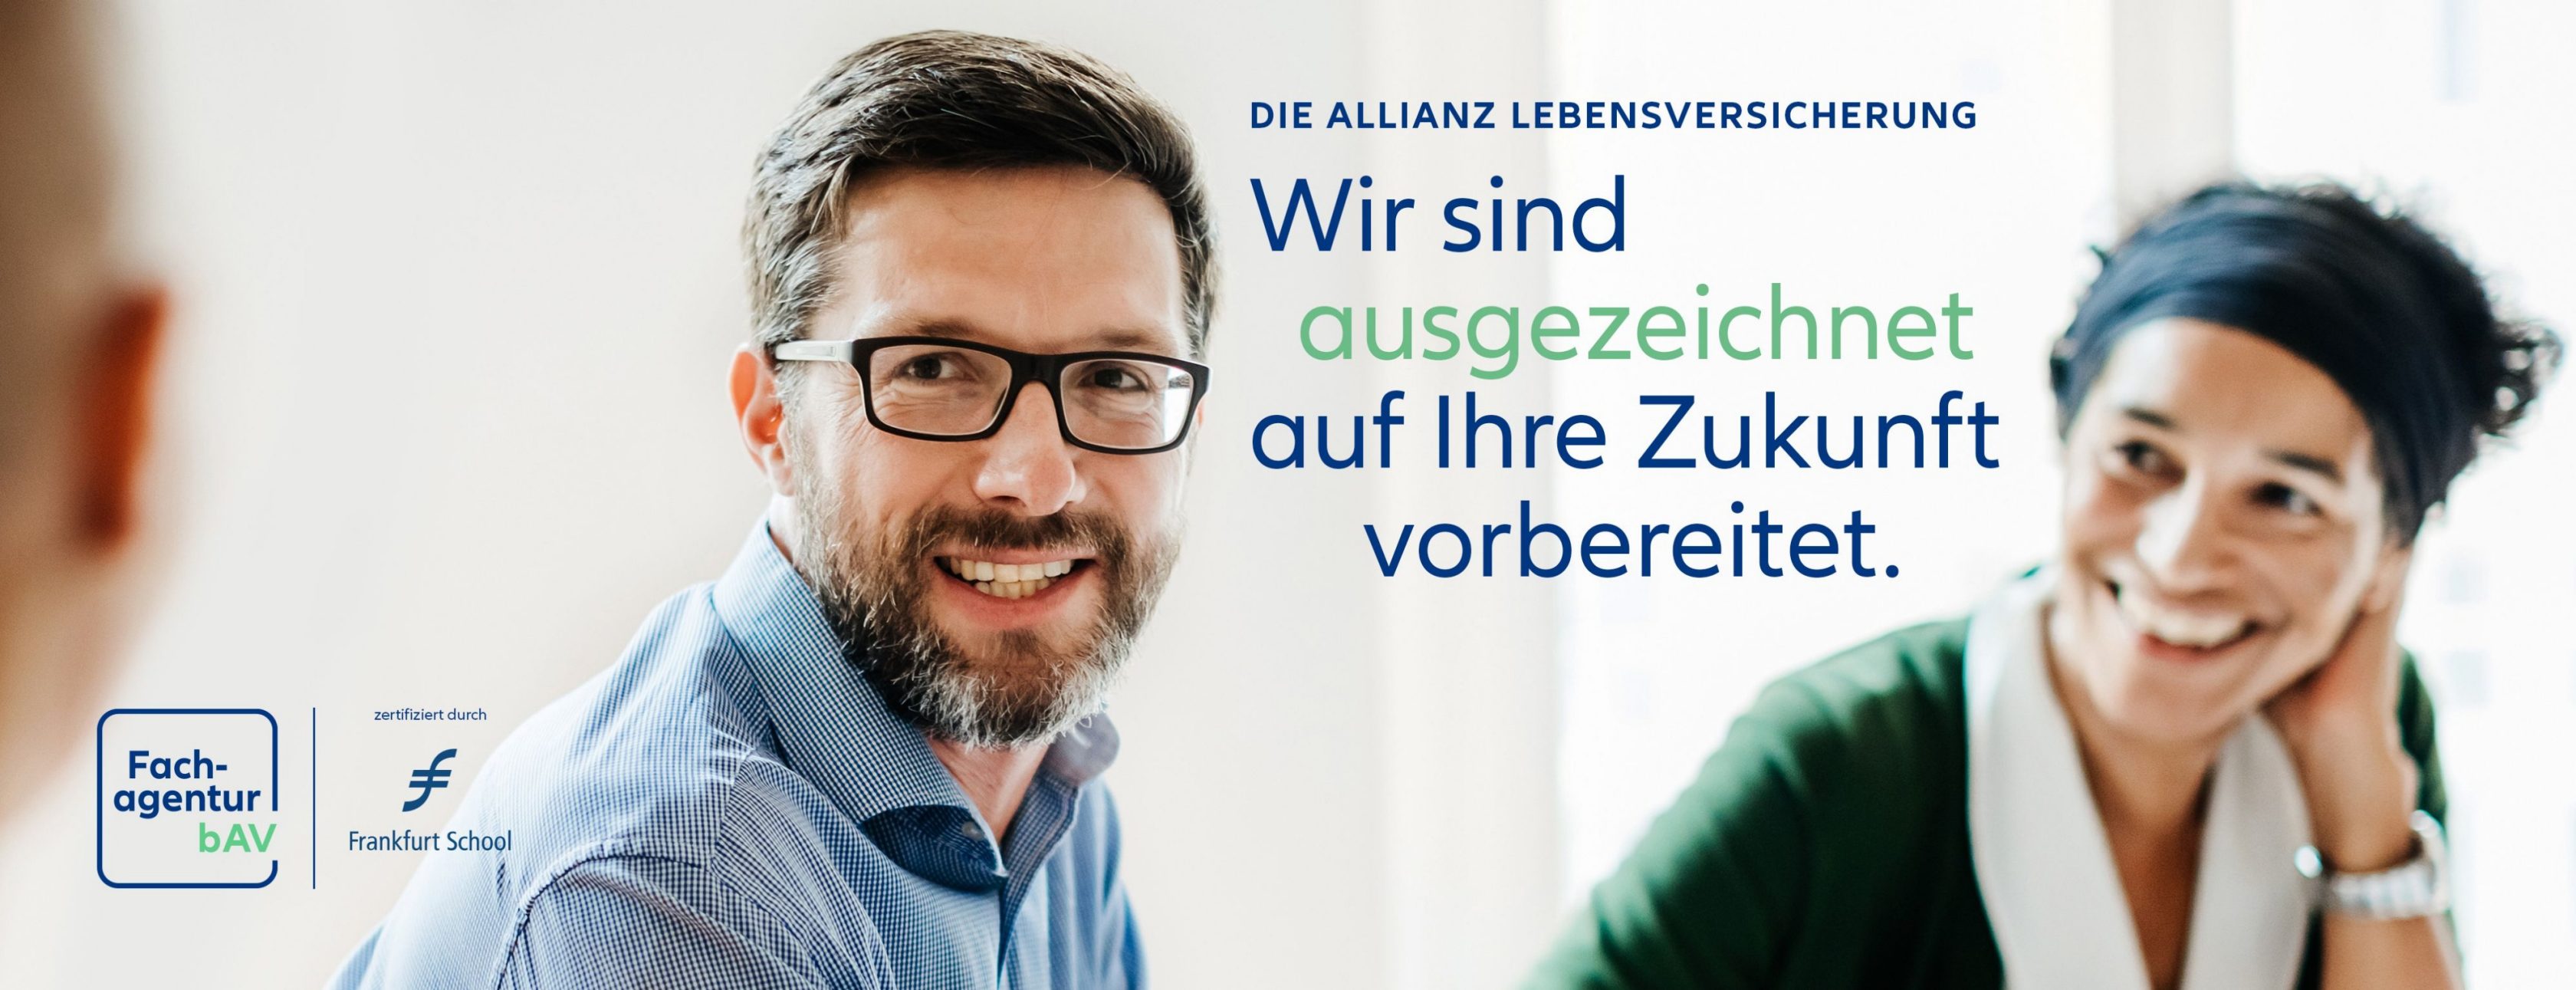 Allianz Versicherung Felix Demme Leinfelden-Echterdingen - Allianz Fachagentur bAV Felix Demme